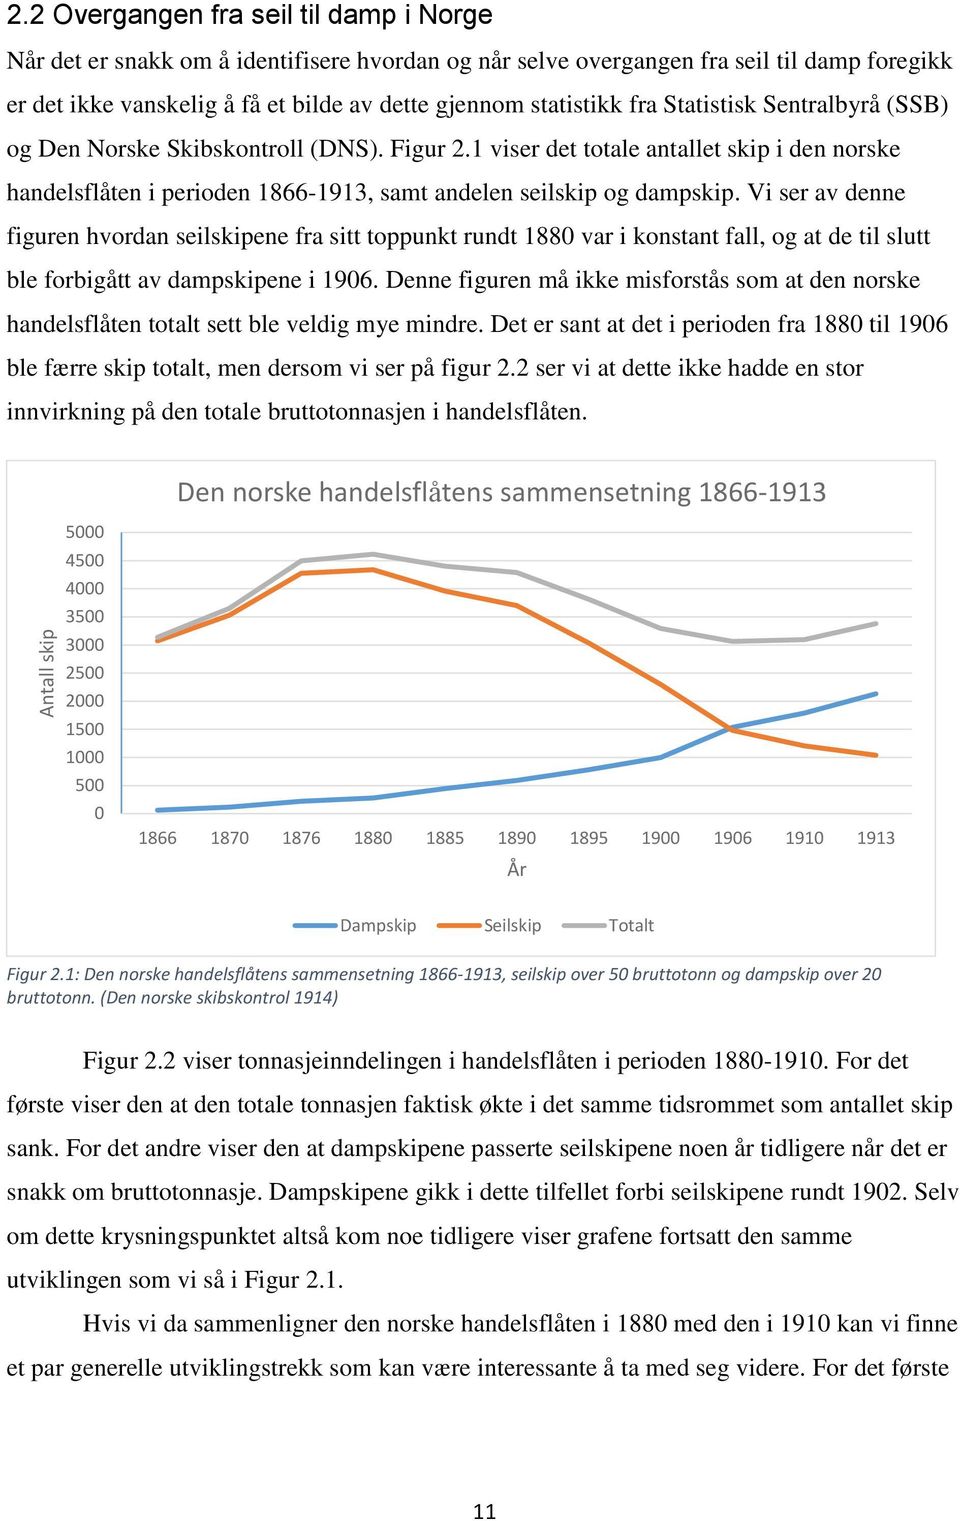 fra Statistisk Sentralbyrå (SSB) og Den Norske Skibskontroll (DNS). Figur 2.1 viser det totale antallet skip i den norske handelsflåten i perioden 1866-1913, samt andelen seilskip og dampskip.